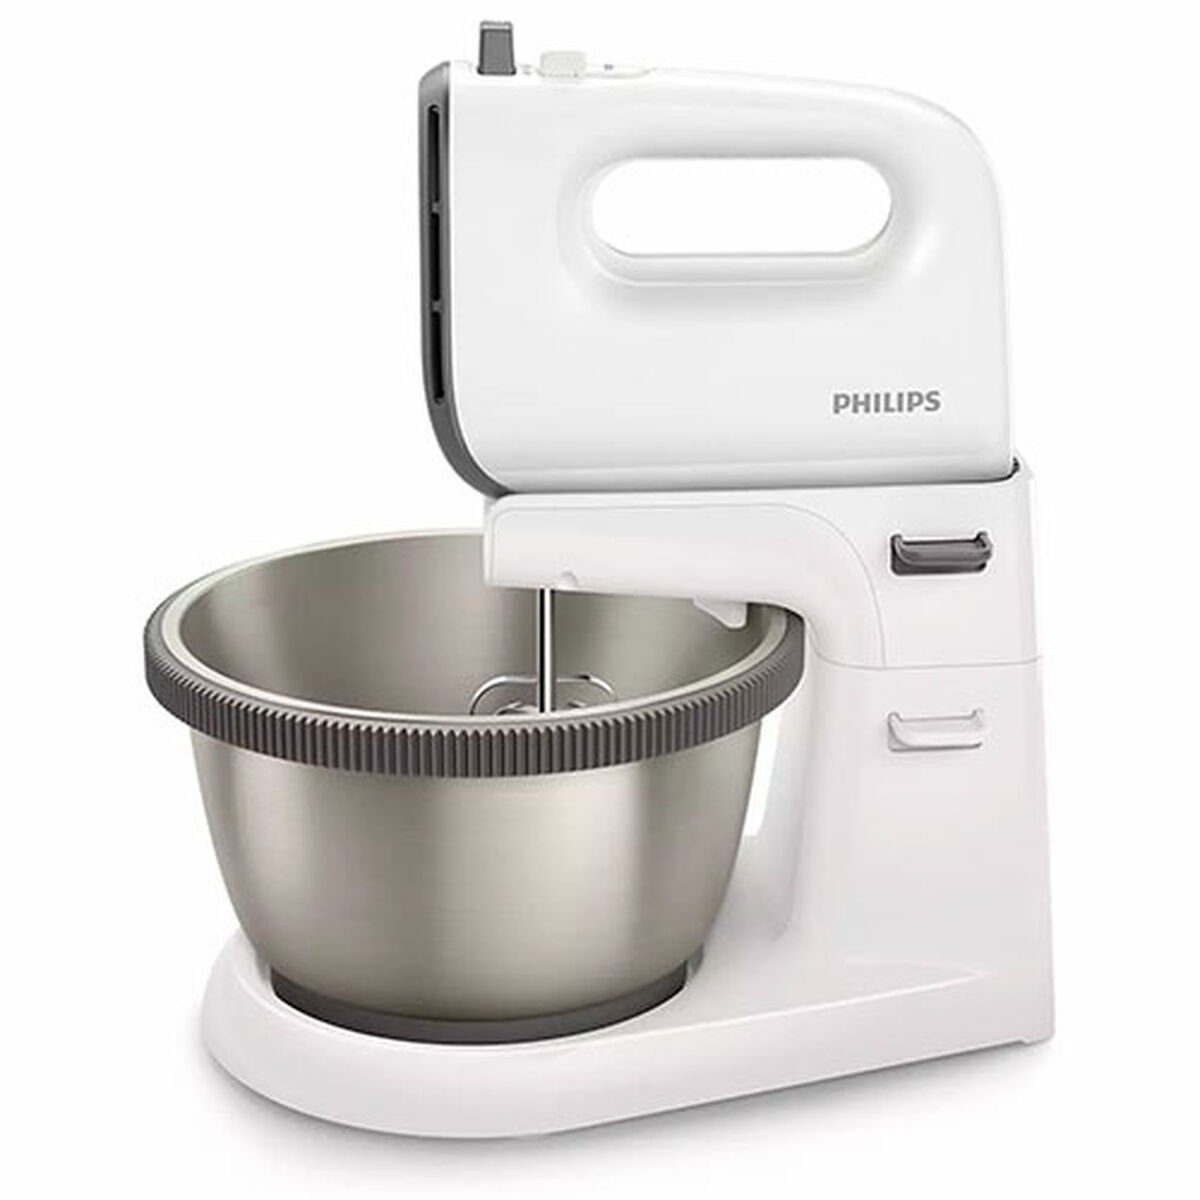 Philips Küchenmaschine Knetmaschine Küchenmaschine Mixer Philips 450 W, 450 W